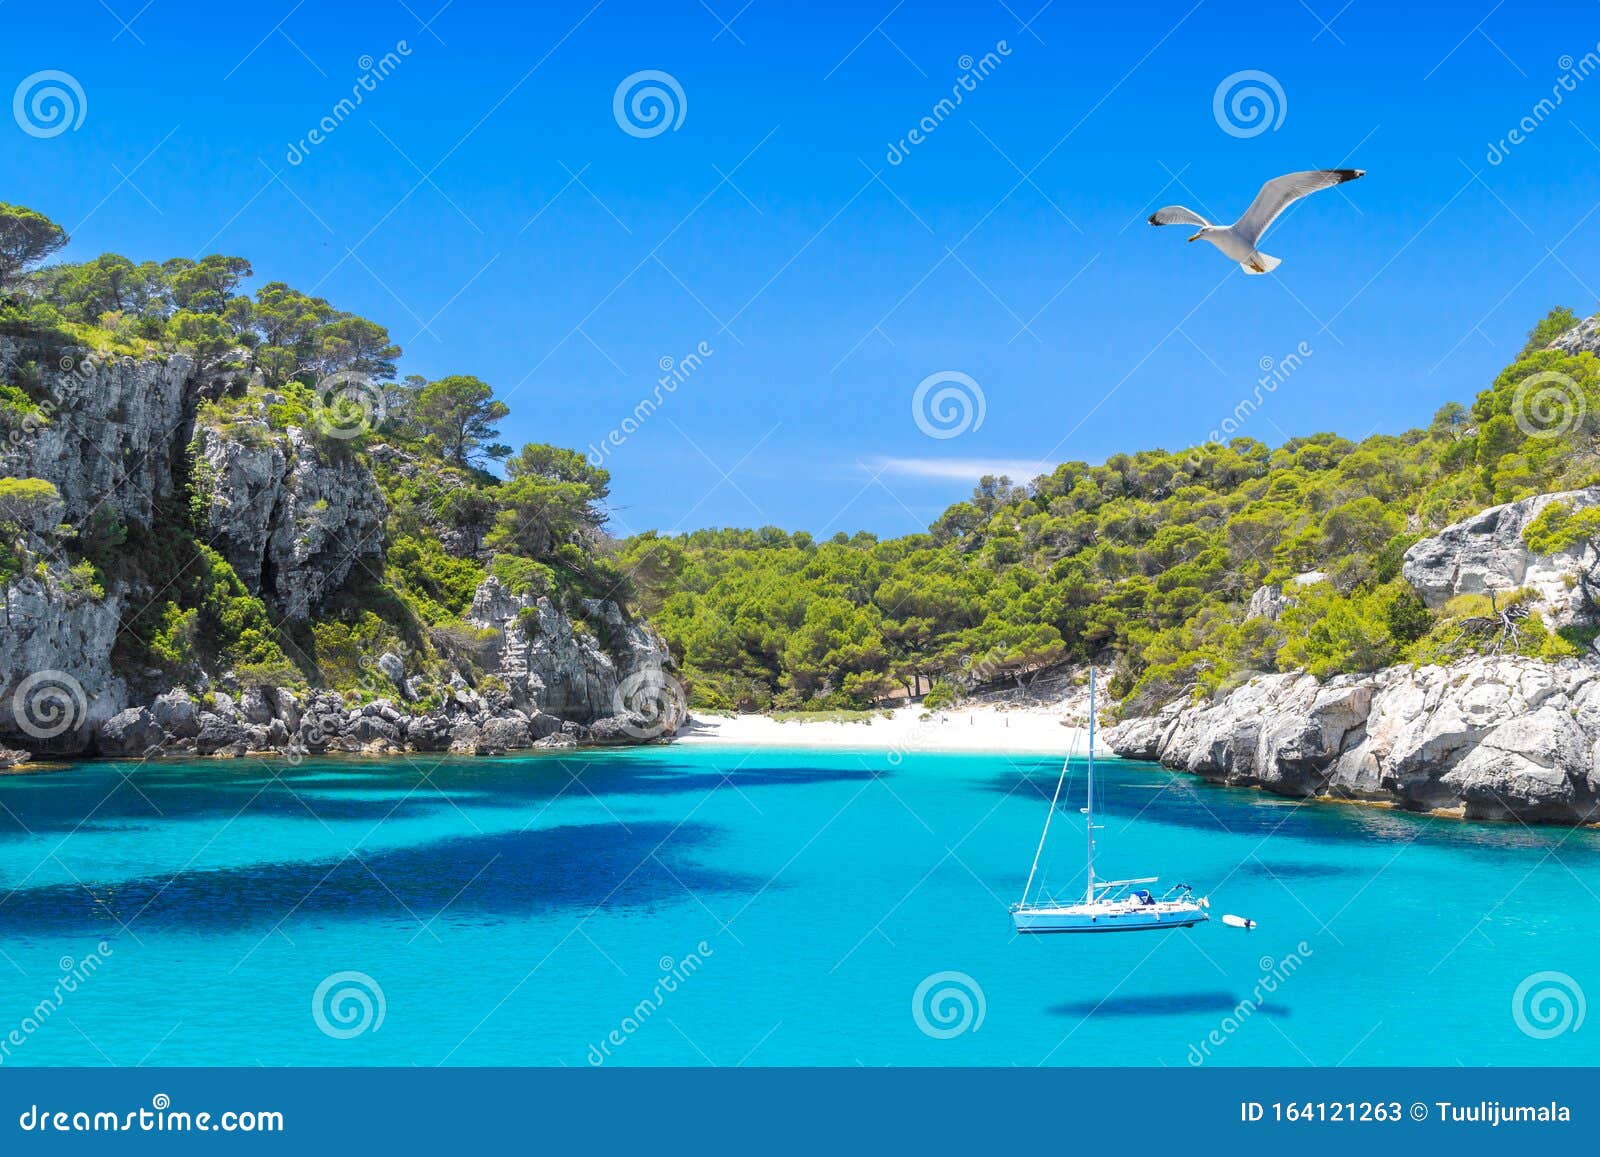 cala macarelleta beach of menorca island